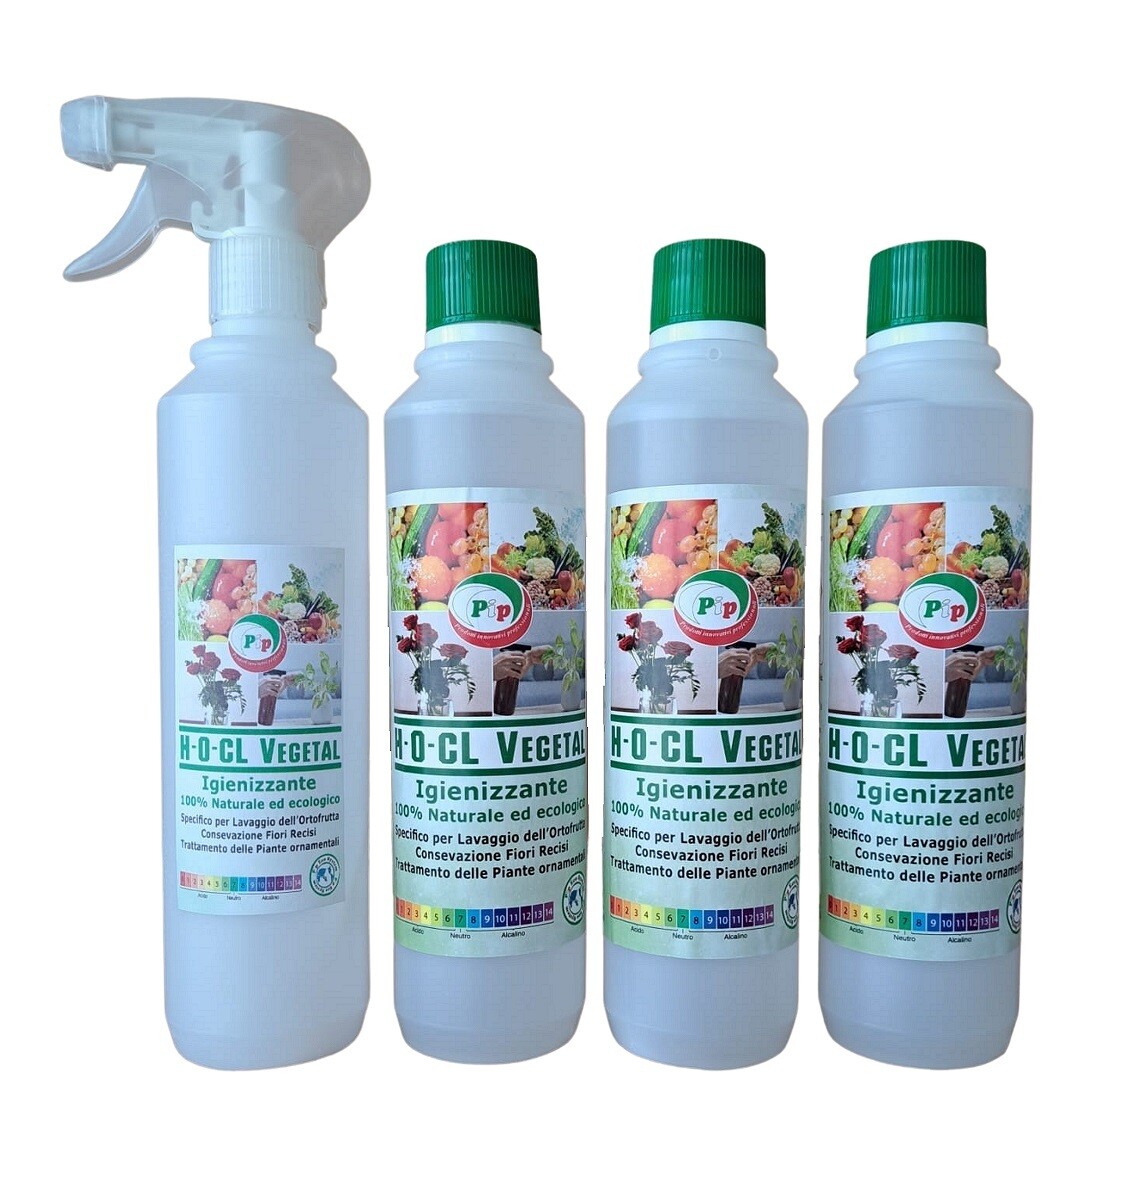 PIP Detergente Igienizzante 100% Naturale ed Ecologico Superconcetrato H-O-CL Vegetal, 3FL.ml.500+ Vapo - Specifico per il lavaggio dell'ortofrutta, conservazione fiori recisi e piante ornamentali.